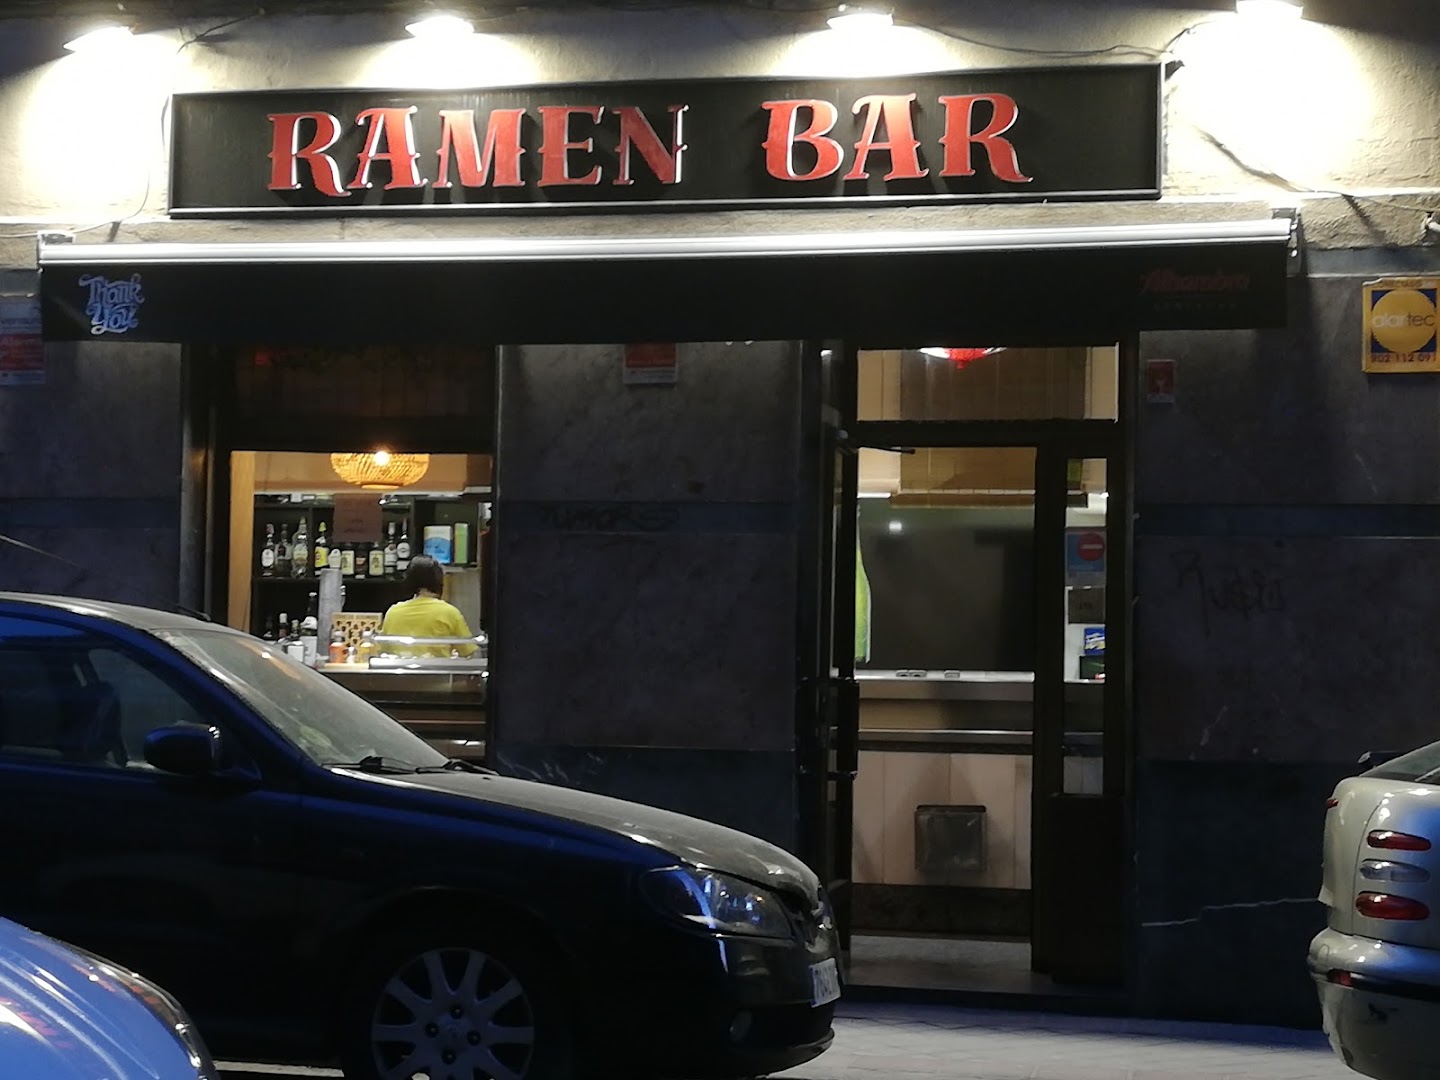 Ramen bar